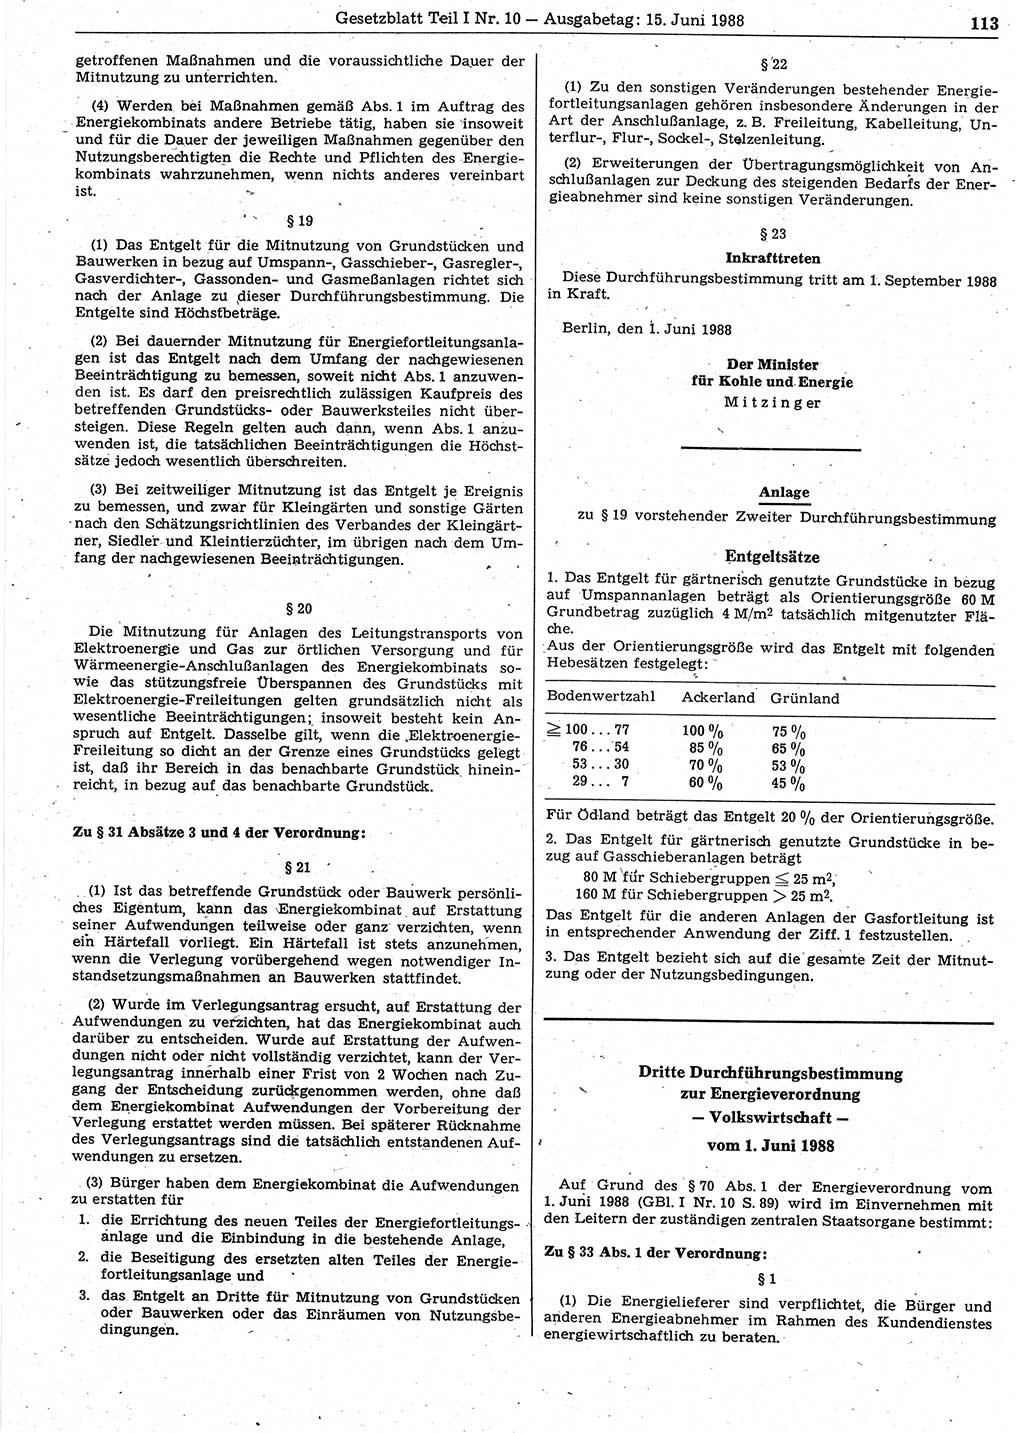 Gesetzblatt (GBl.) der Deutschen Demokratischen Republik (DDR) Teil Ⅰ 1988, Seite 113 (GBl. DDR Ⅰ 1988, S. 113)